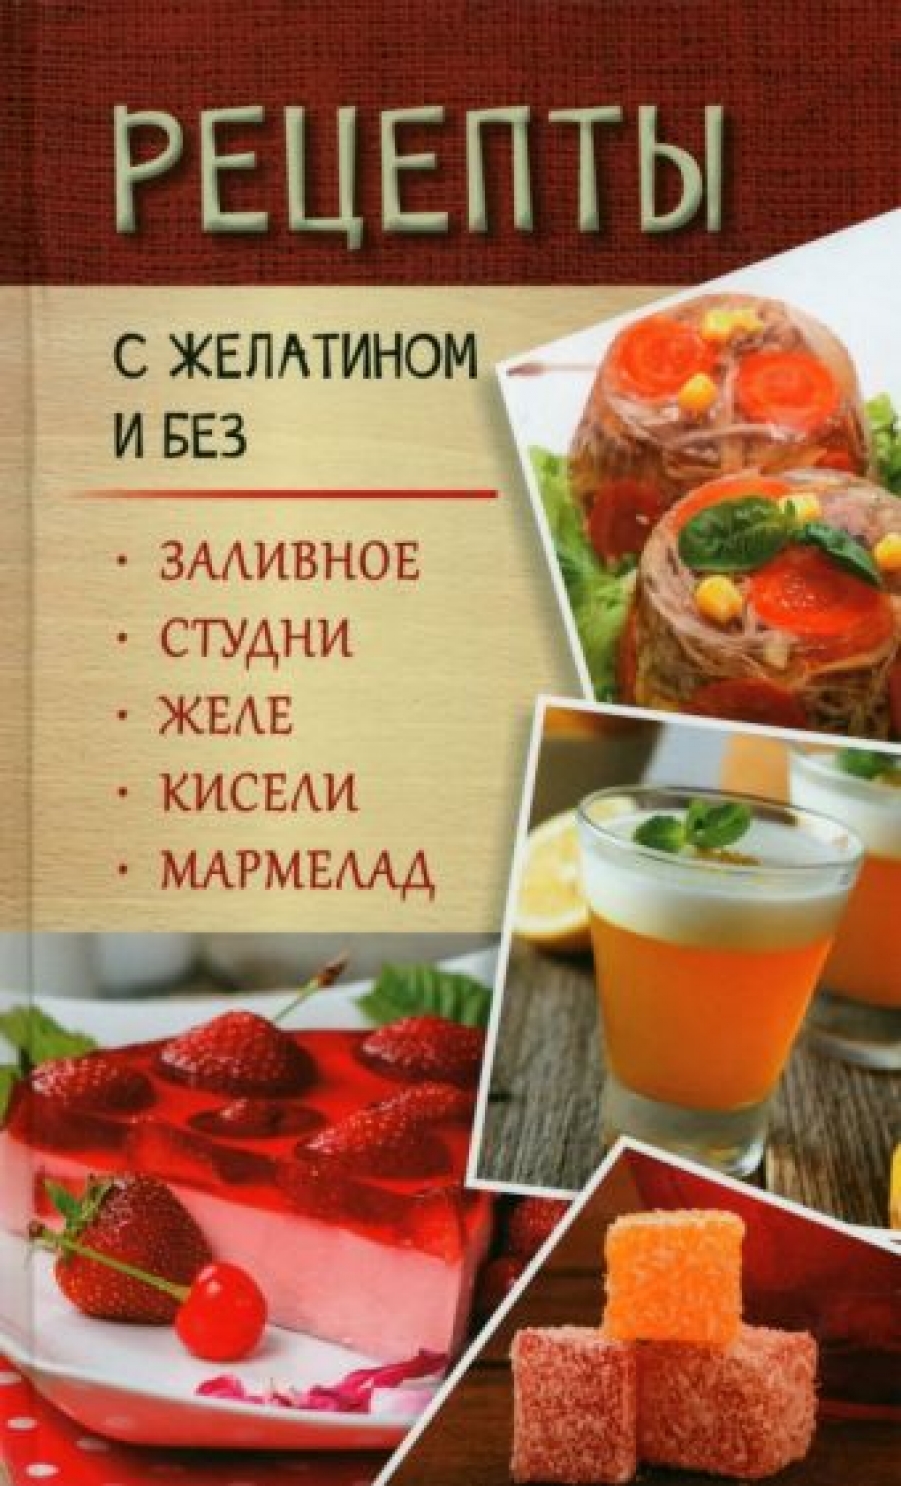 Данканич М. Рецепты с желатином и без 